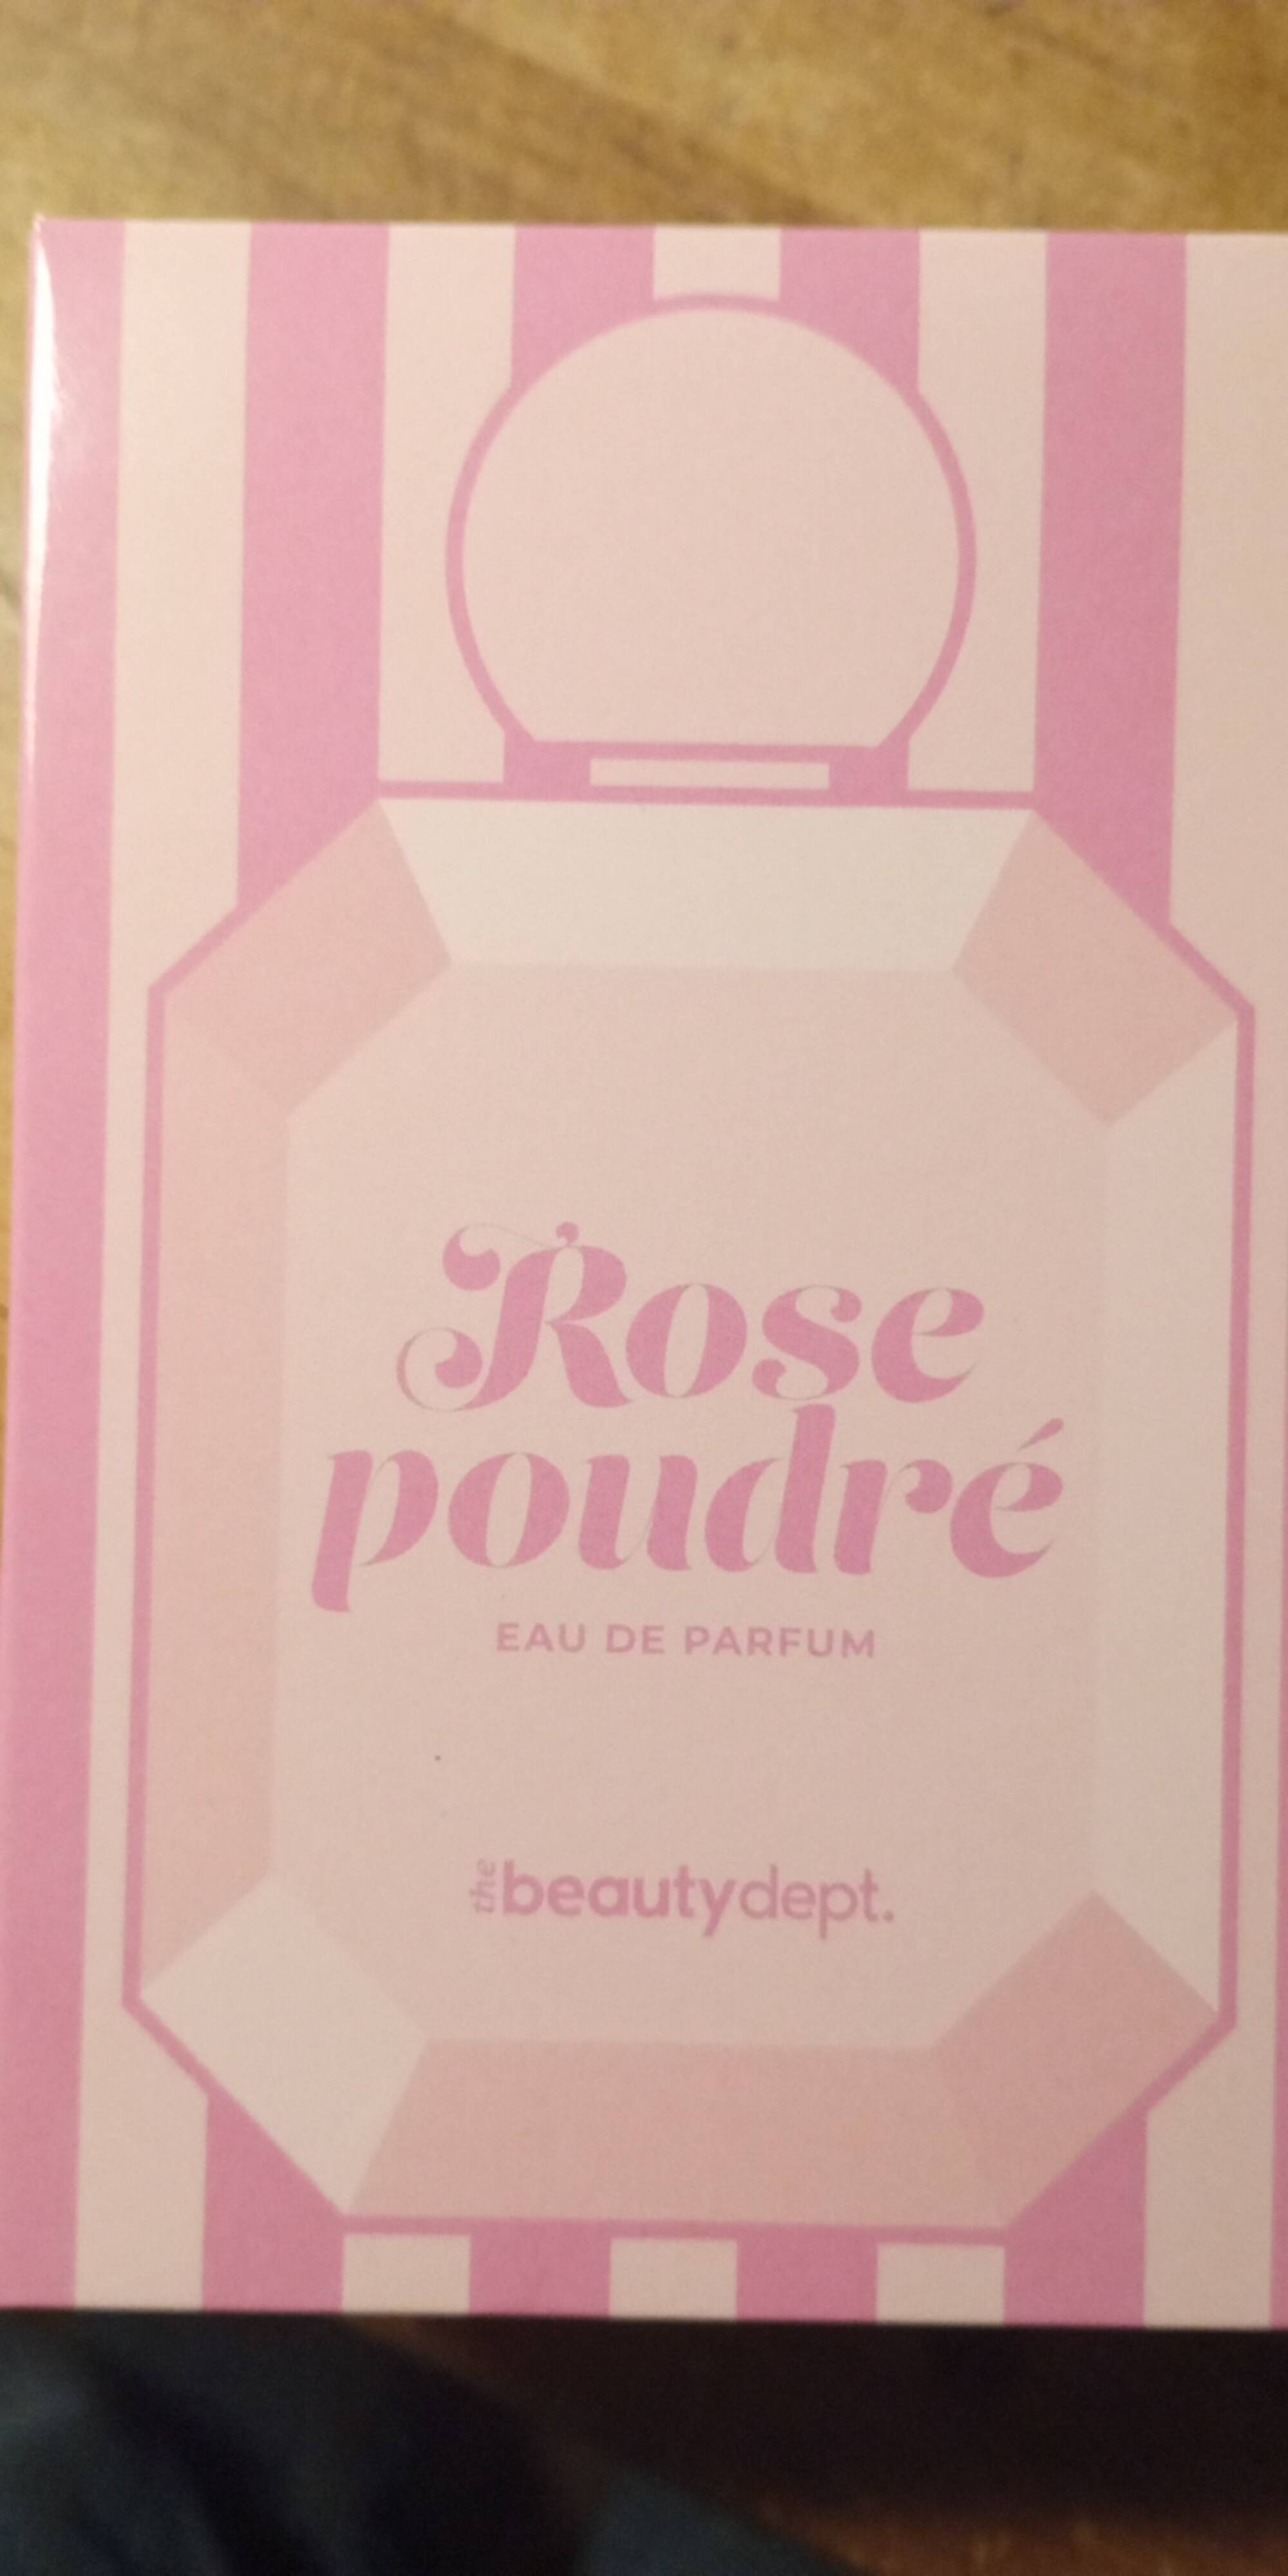 THE BEAUTY DEPT - Rose poudrée - Eau de parfum